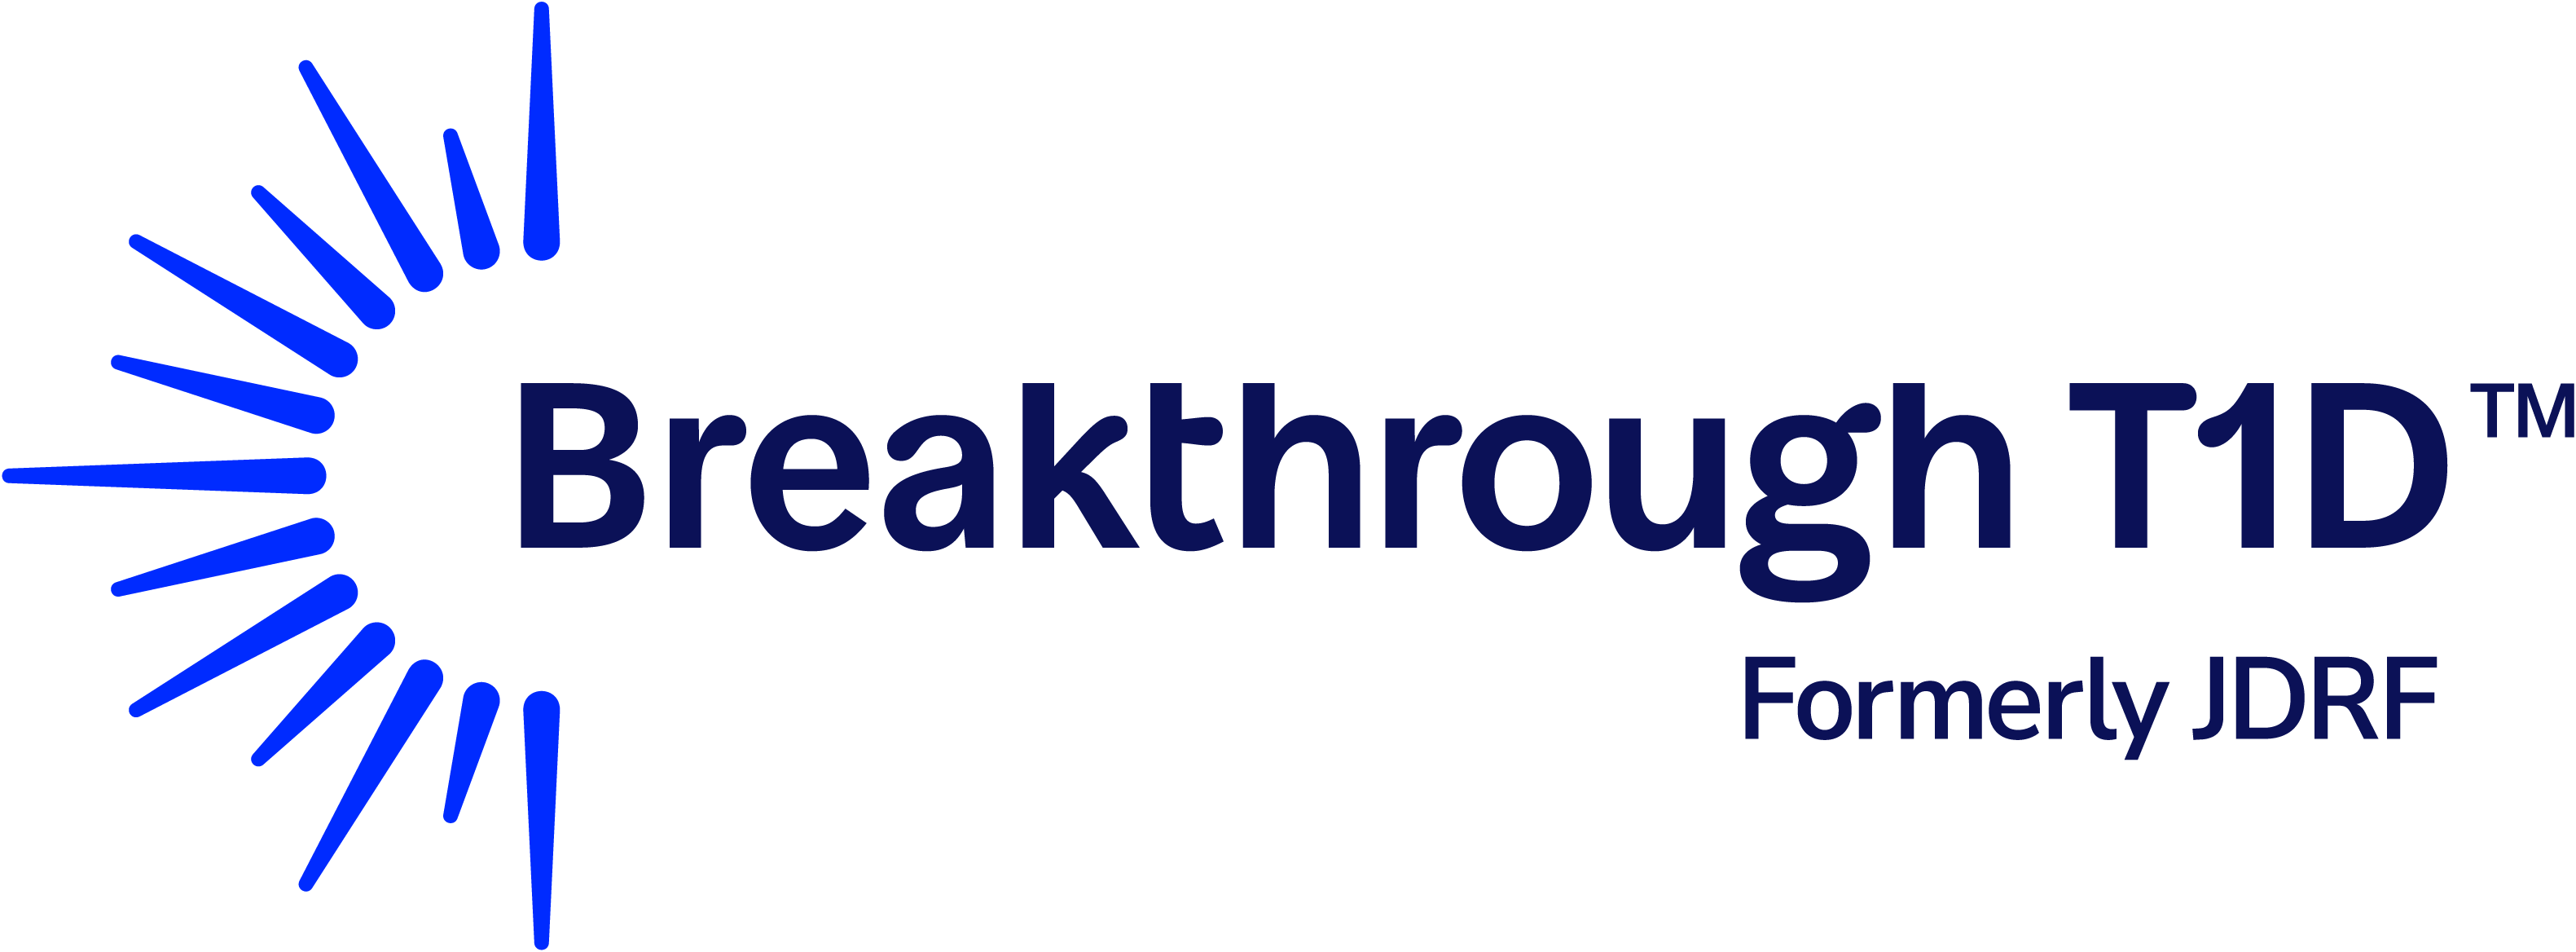 breakthrought1d_logo